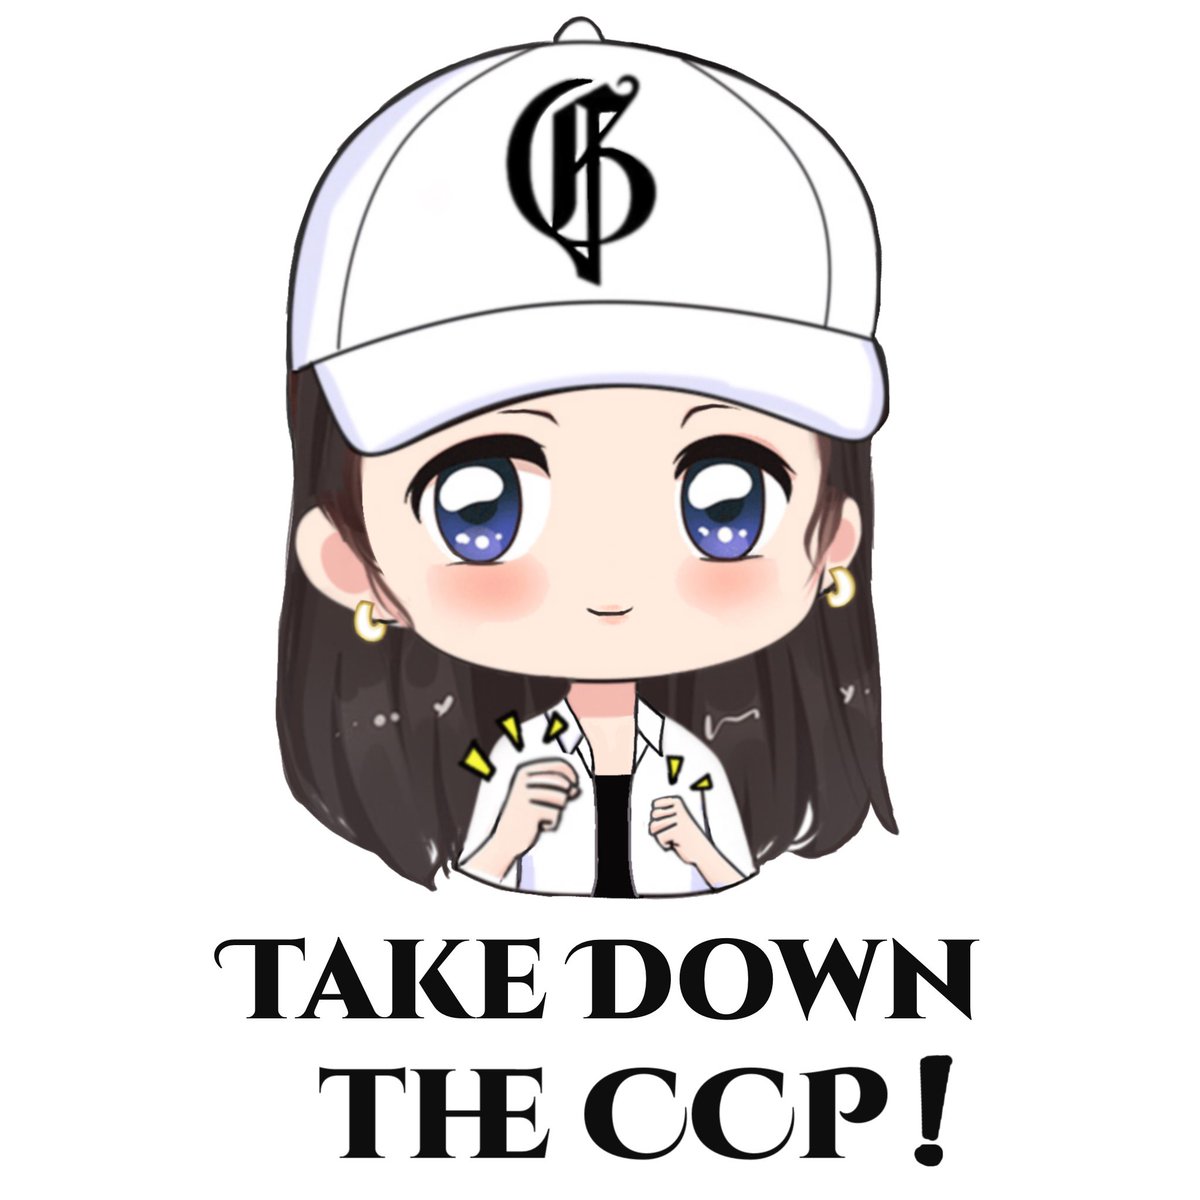 Q版表情包之Take Down the CCP！🤩👏👏……
#手绘